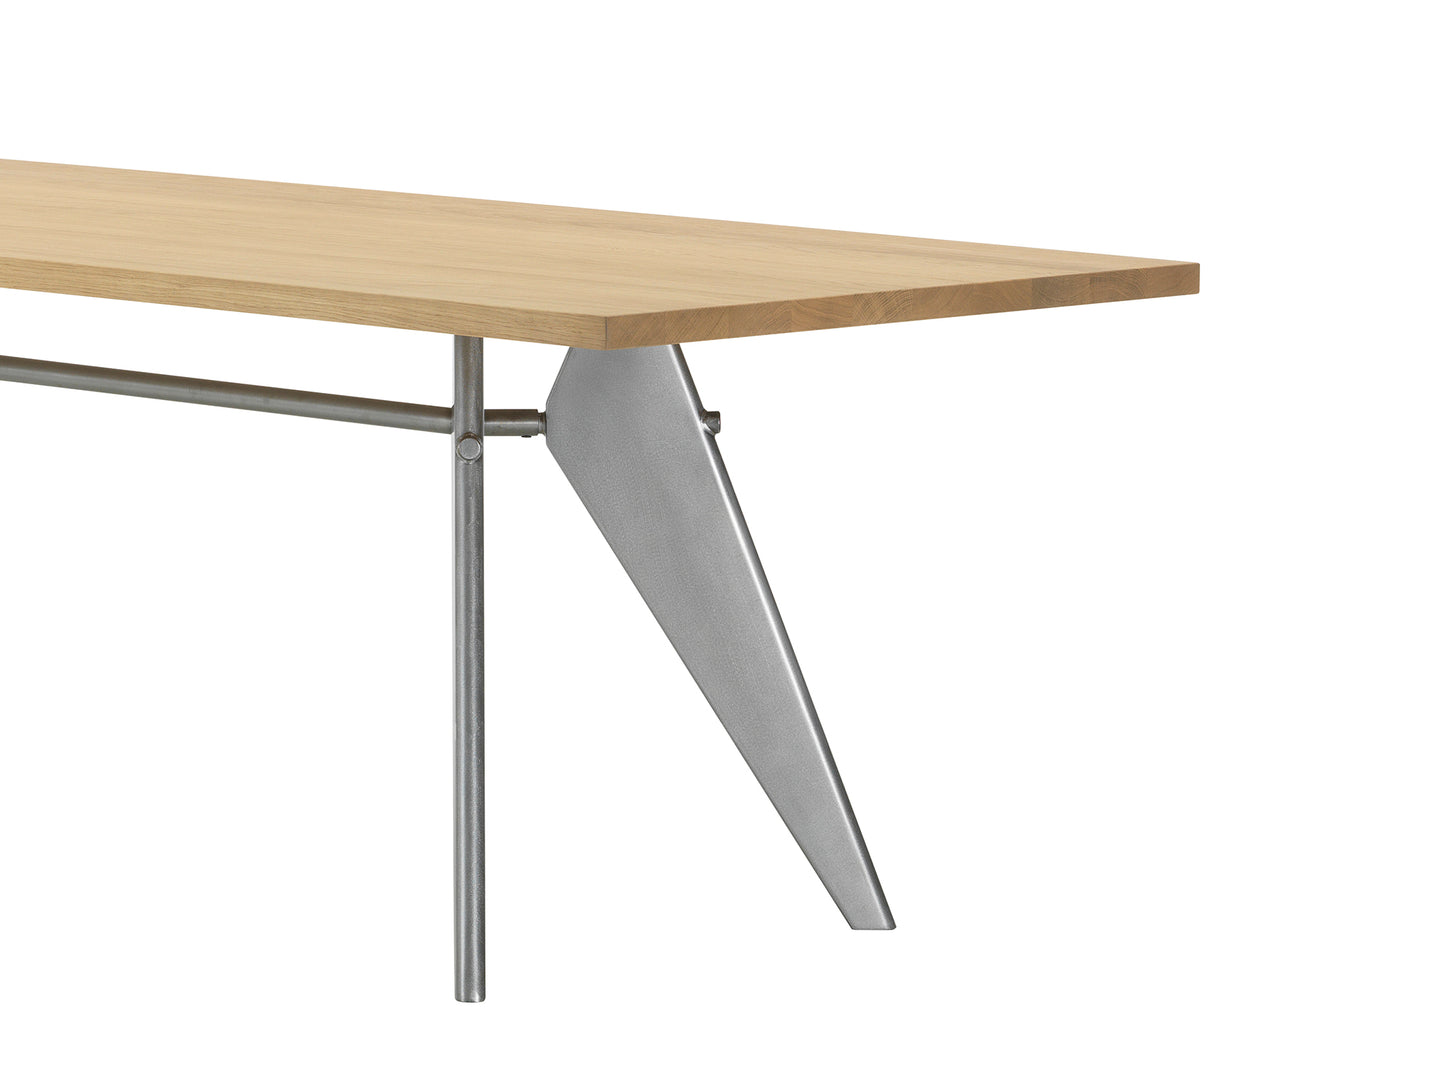 EM Table (Solid Oak Tabletop) by Vitra - Length 220 cm / Solid Oak Tabletop / Metal Brut Base